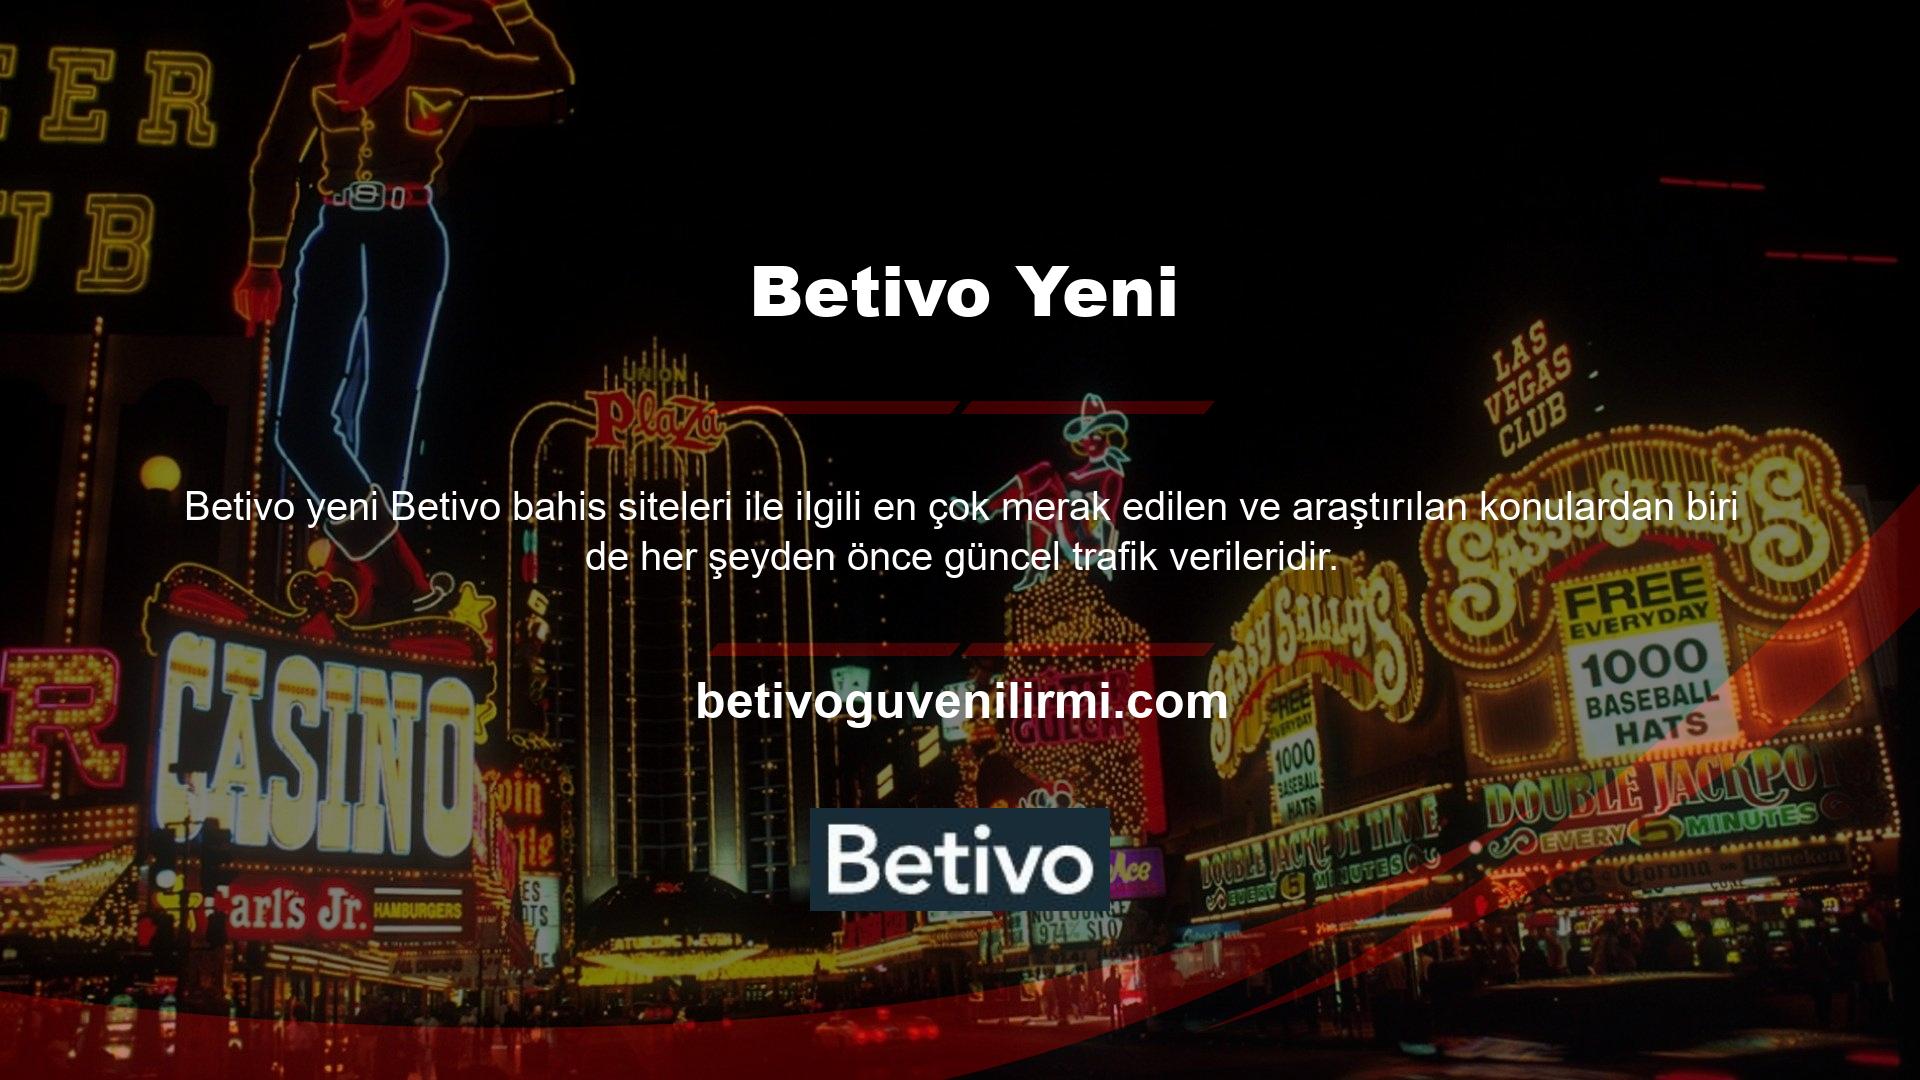 Betivo tüm yeni teklifleri tüm kayıtlı üyelerine anında iletir